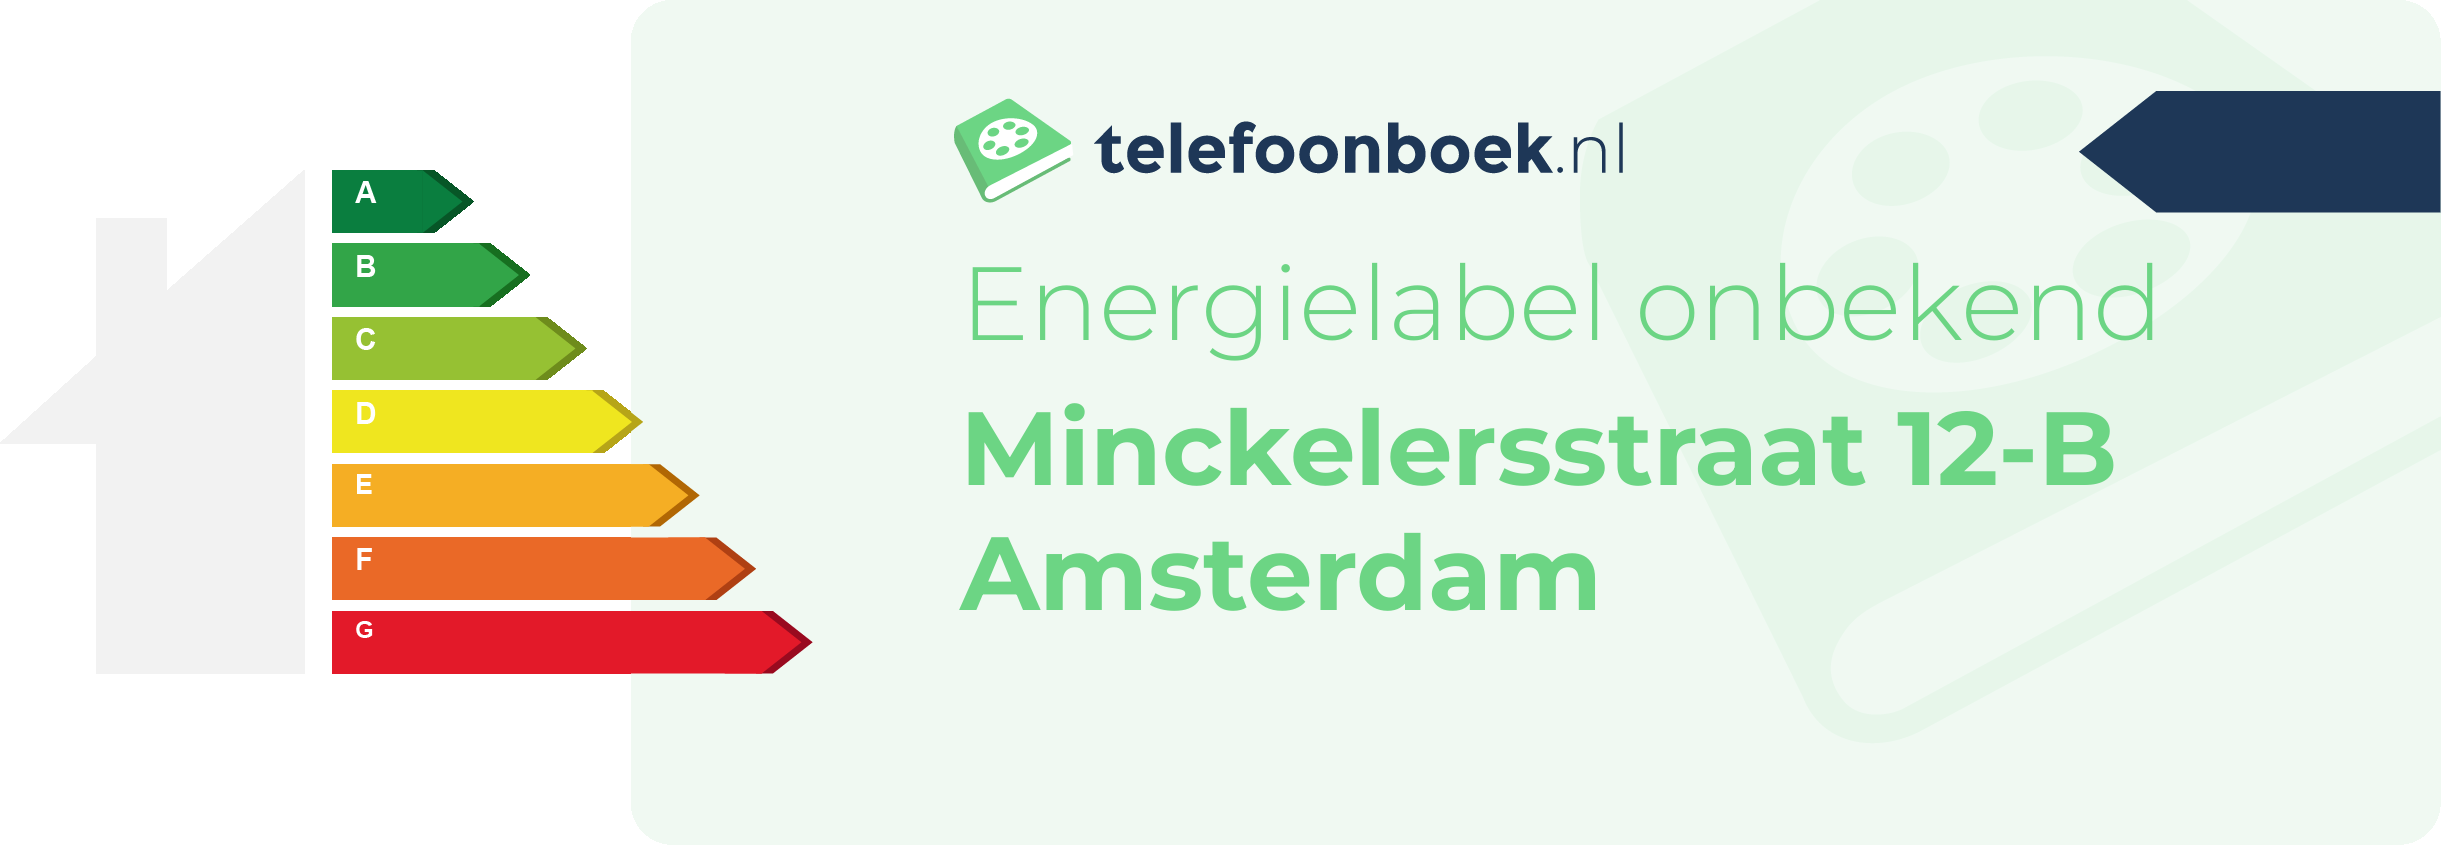 Energielabel Minckelersstraat 12-B Amsterdam